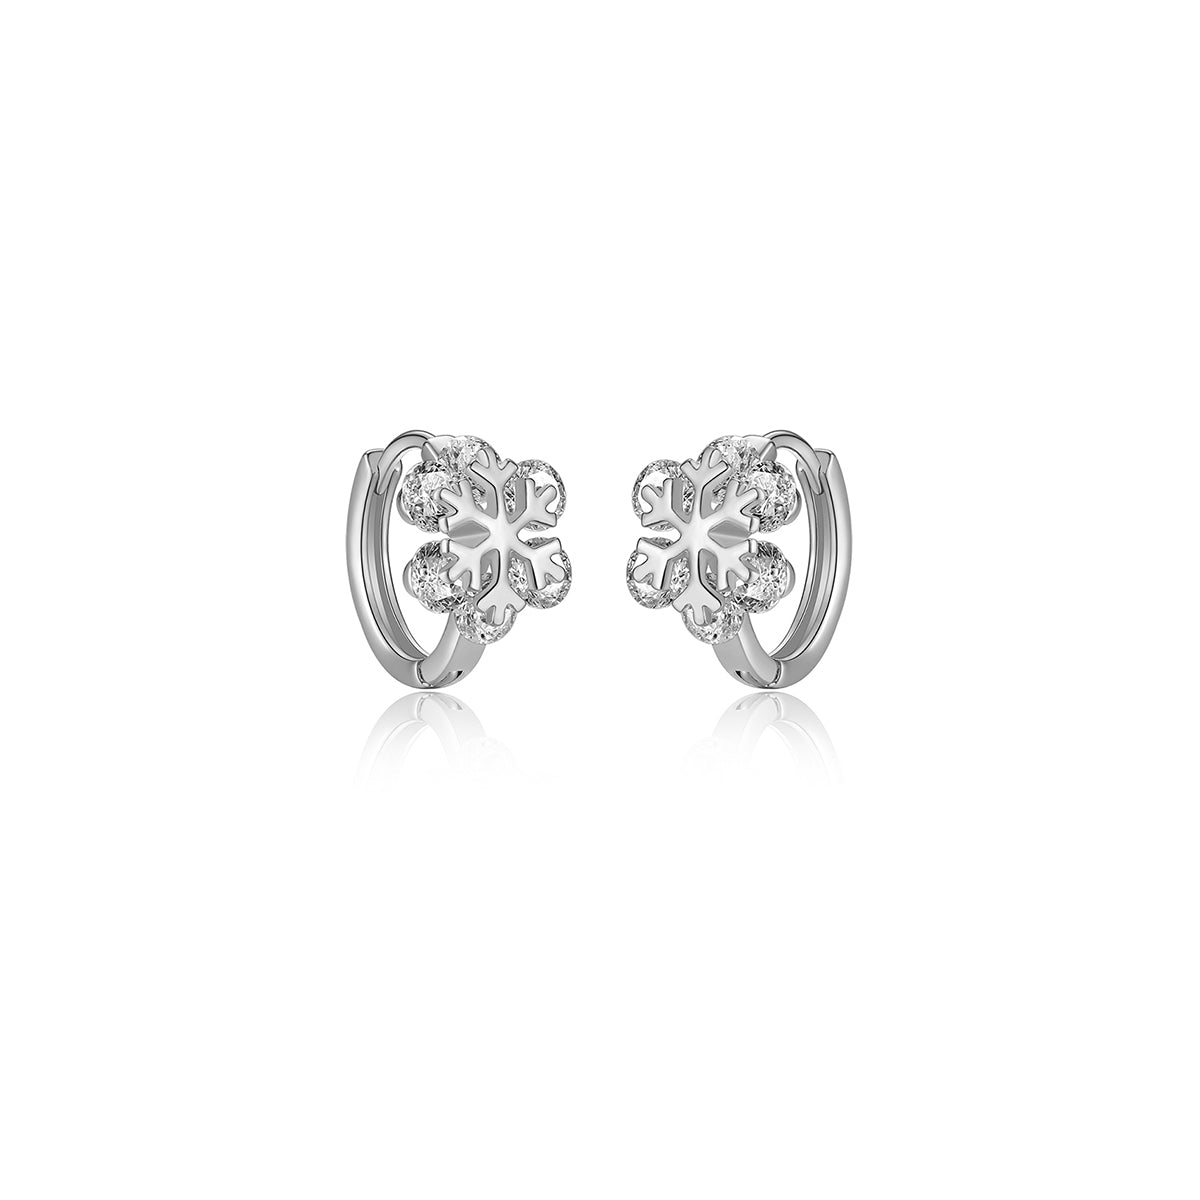 Crystal Snowflake Silver Earrings - 0cm